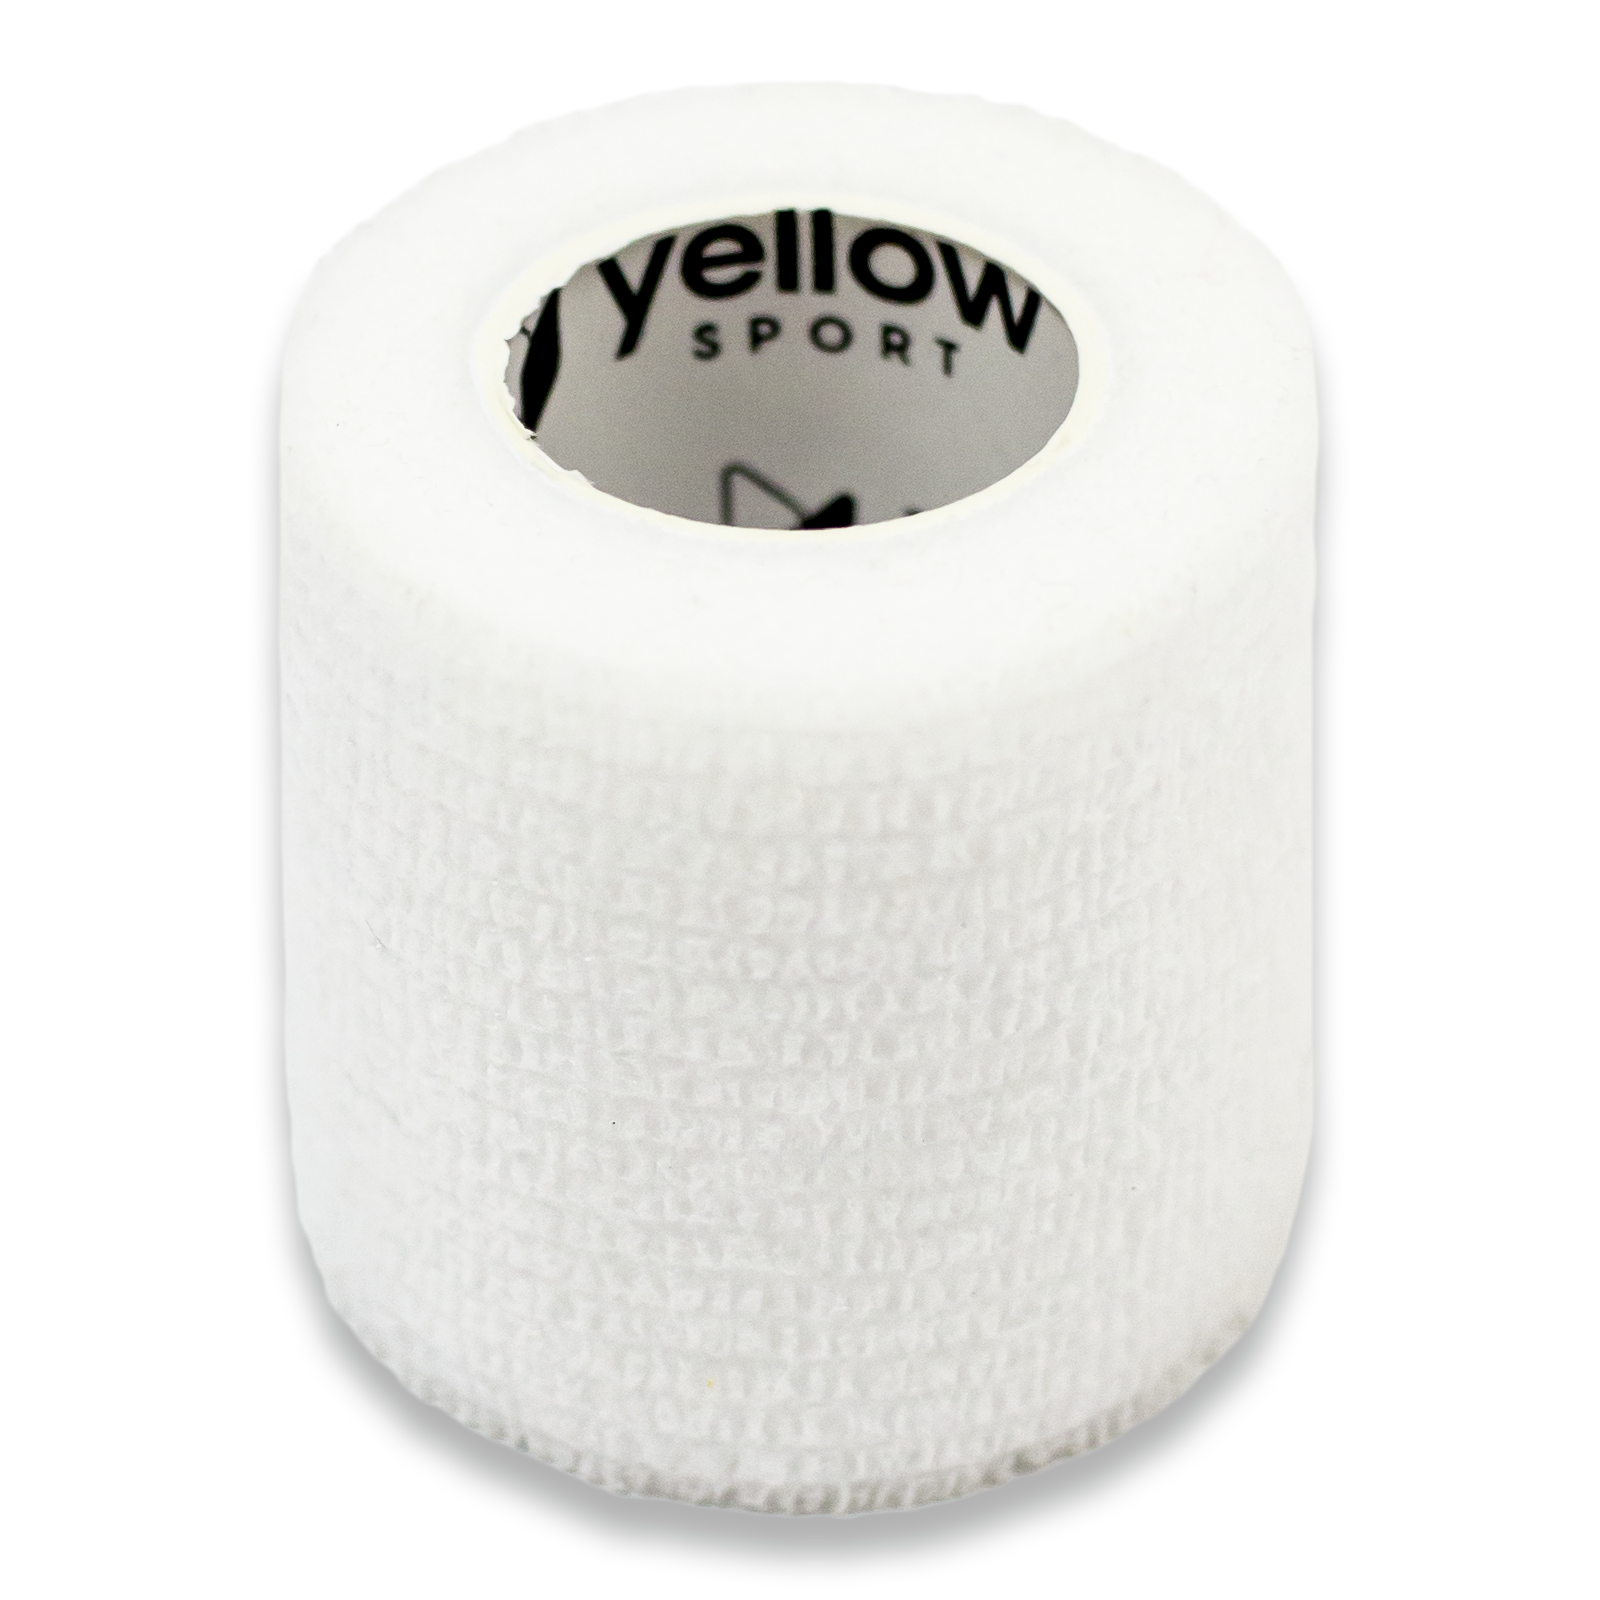 yellowBAND bandaż kohezyjny, 5cm x 4,5m, Biały